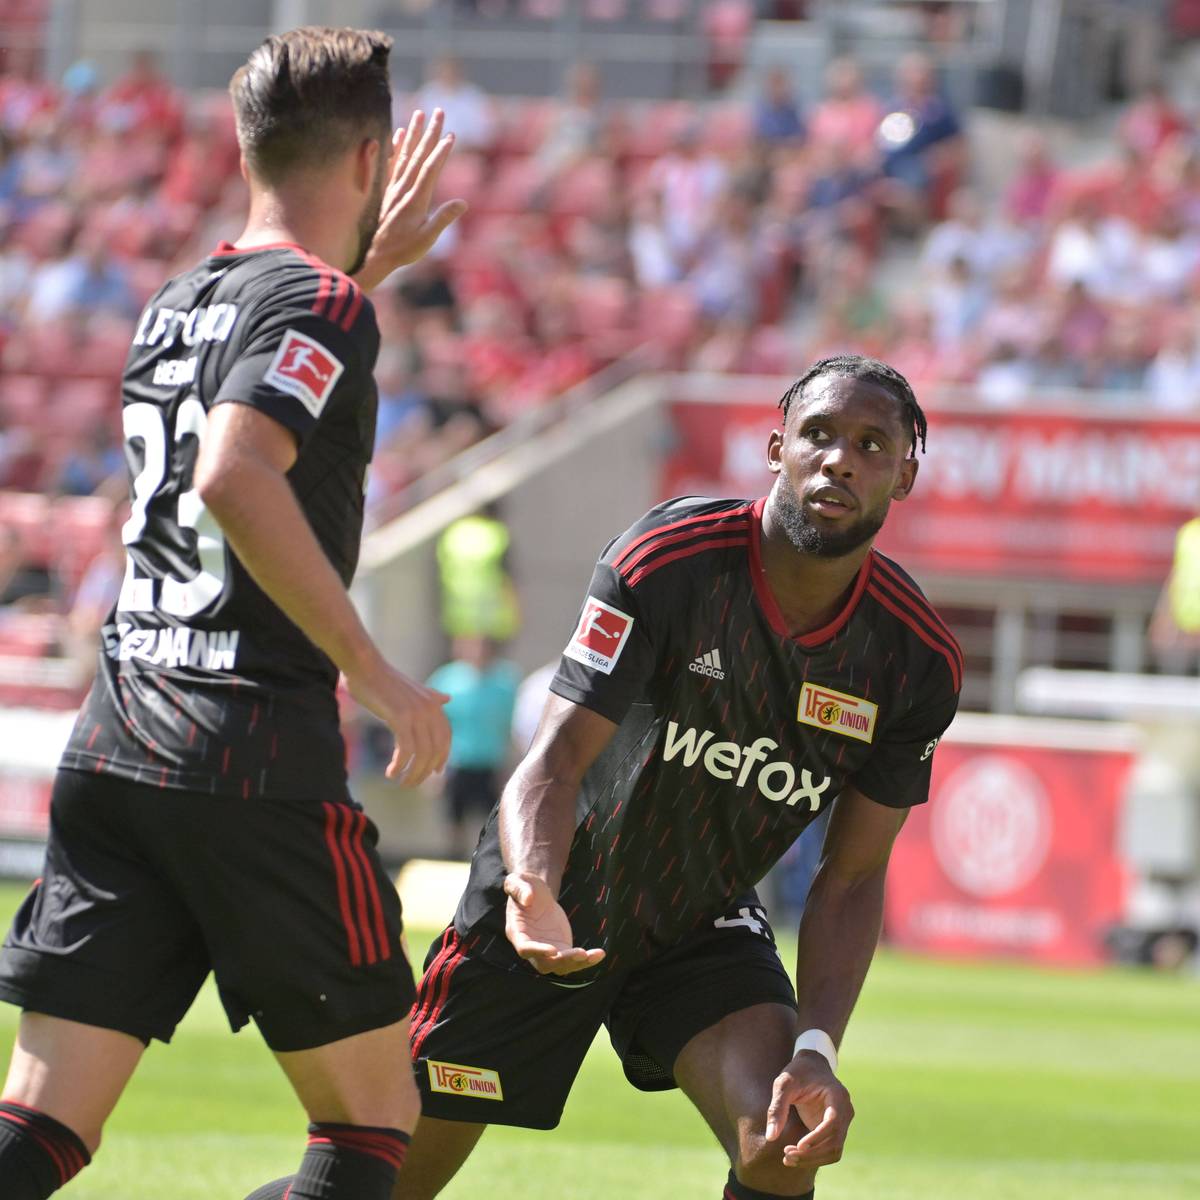 Mainz 05 und Union Berlin liefern sich ein ausgeglichenes Duell. Die Gäste stellen dennoch einen Vereinsrekord auf.